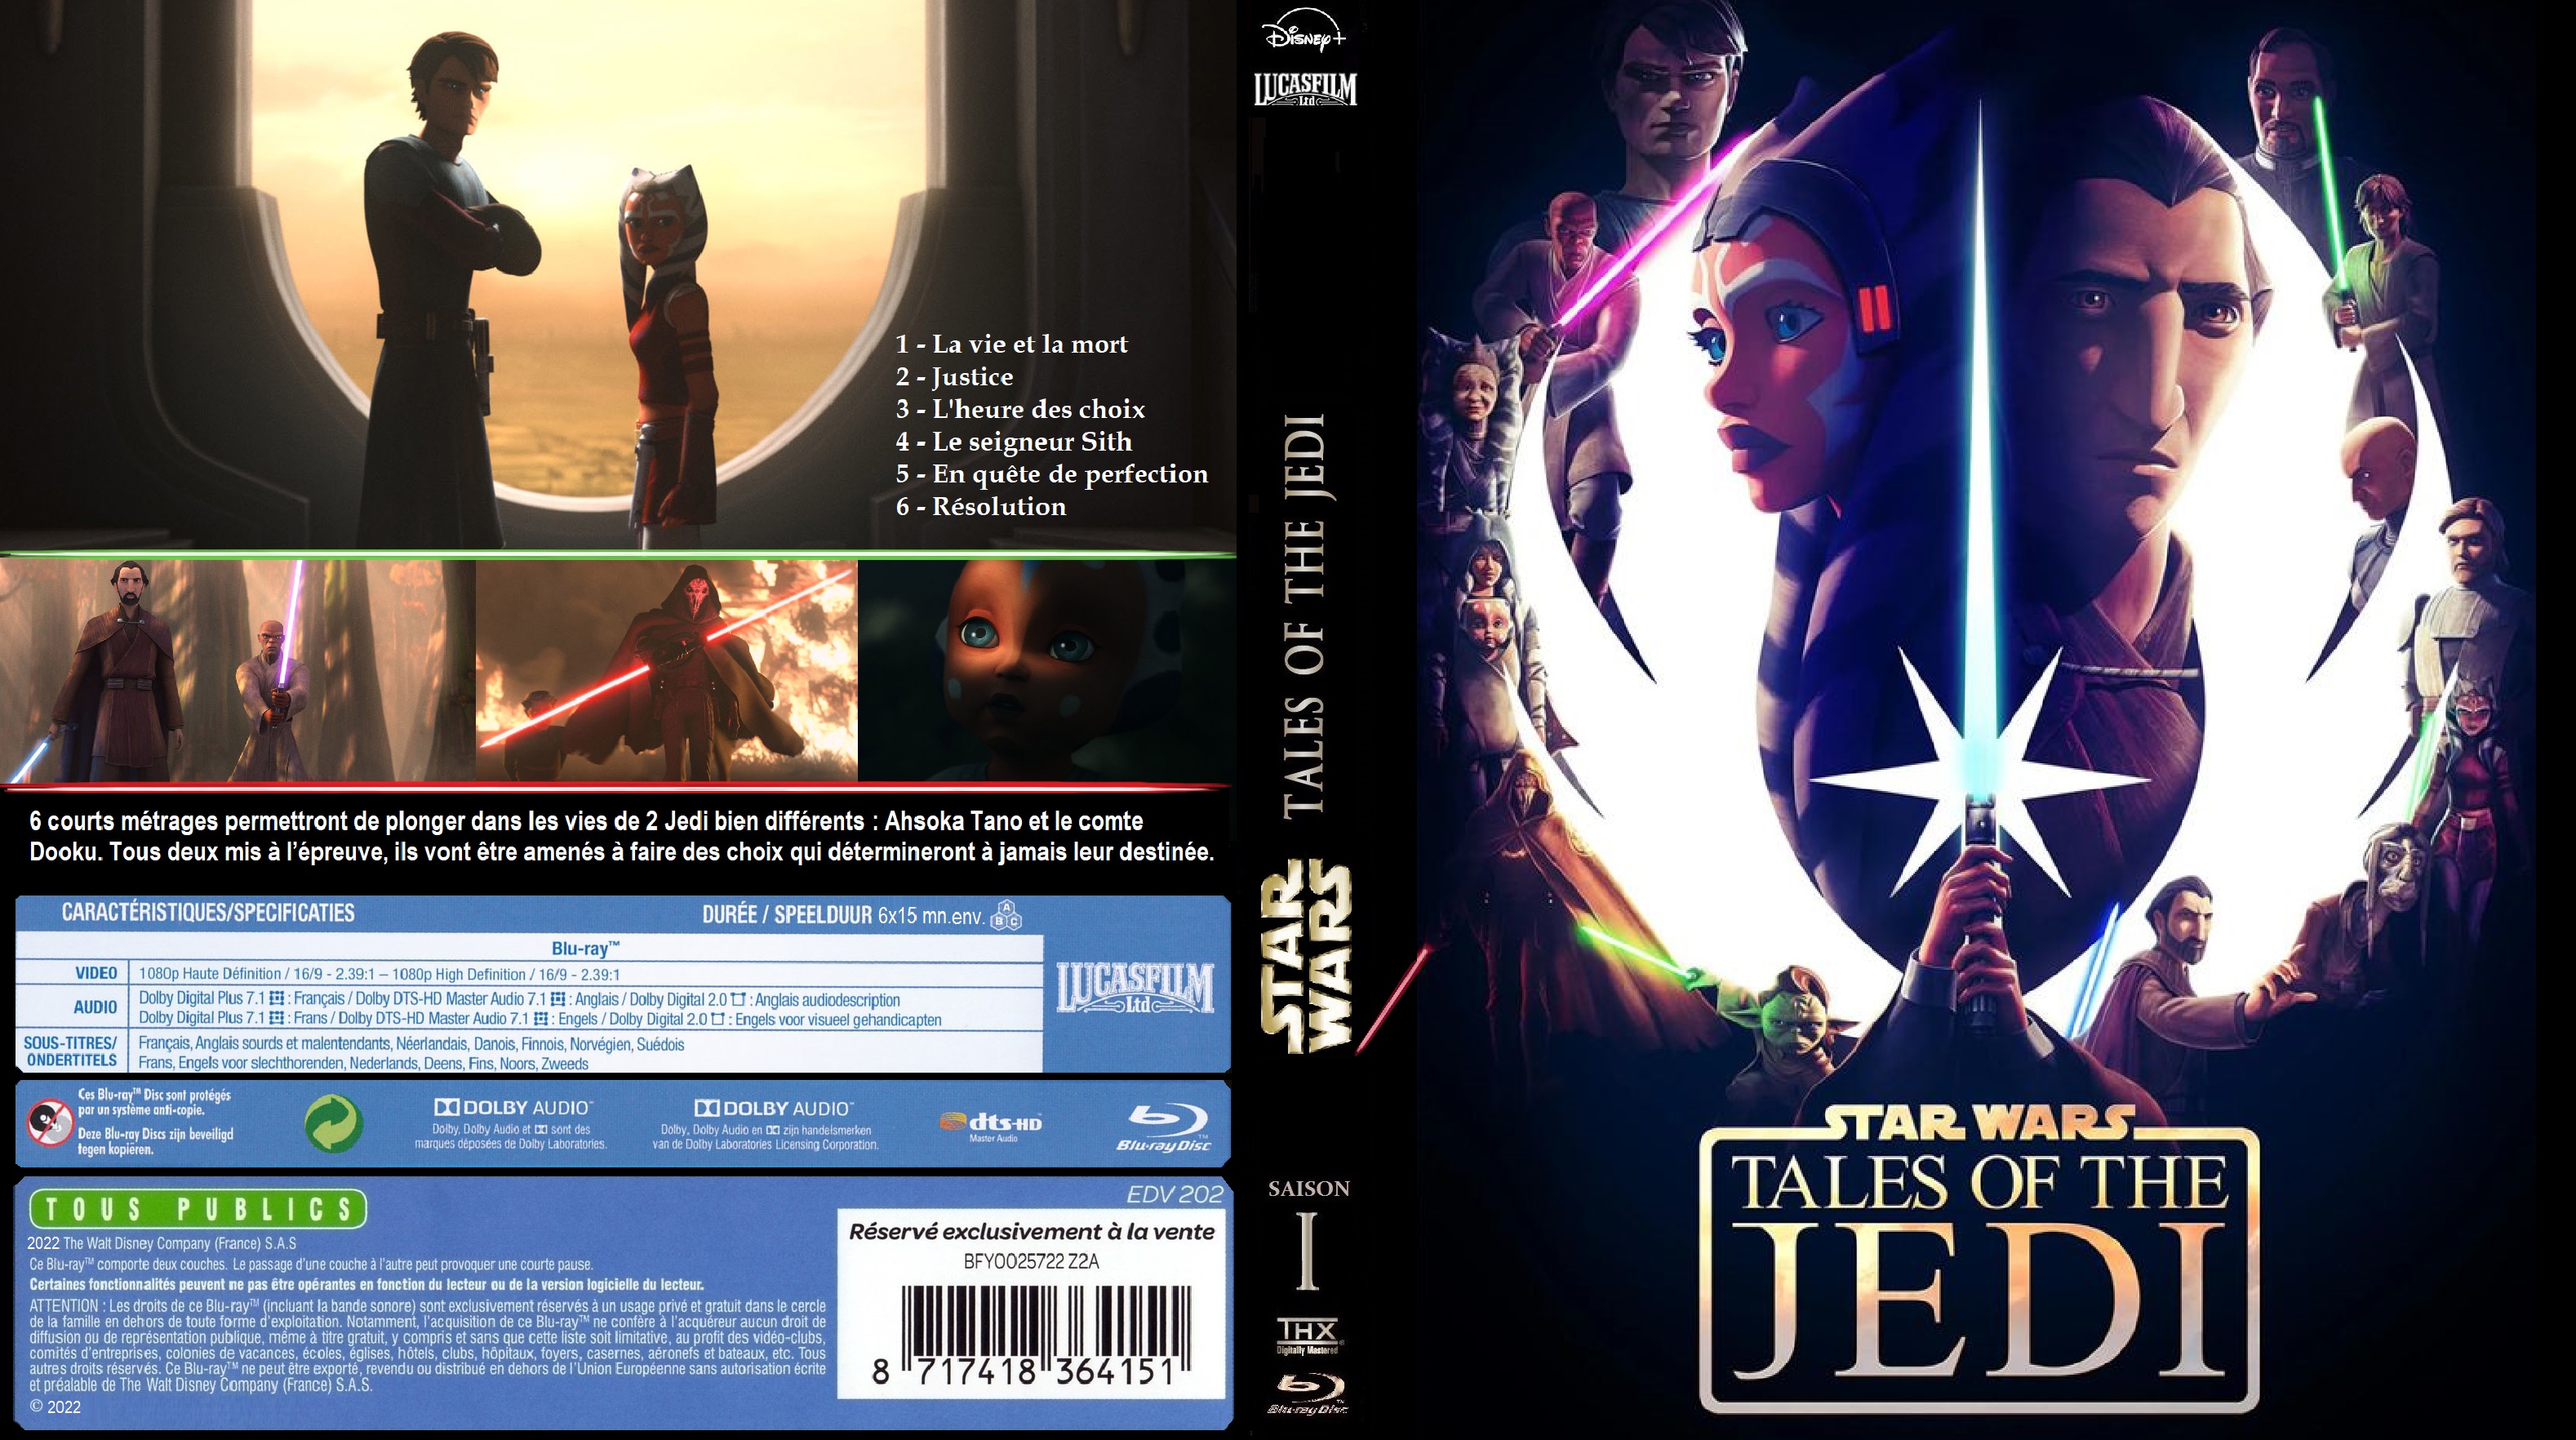 Jaquette DVD Star Wars Tales of the Jedi saison 1 BLU-RAY custom